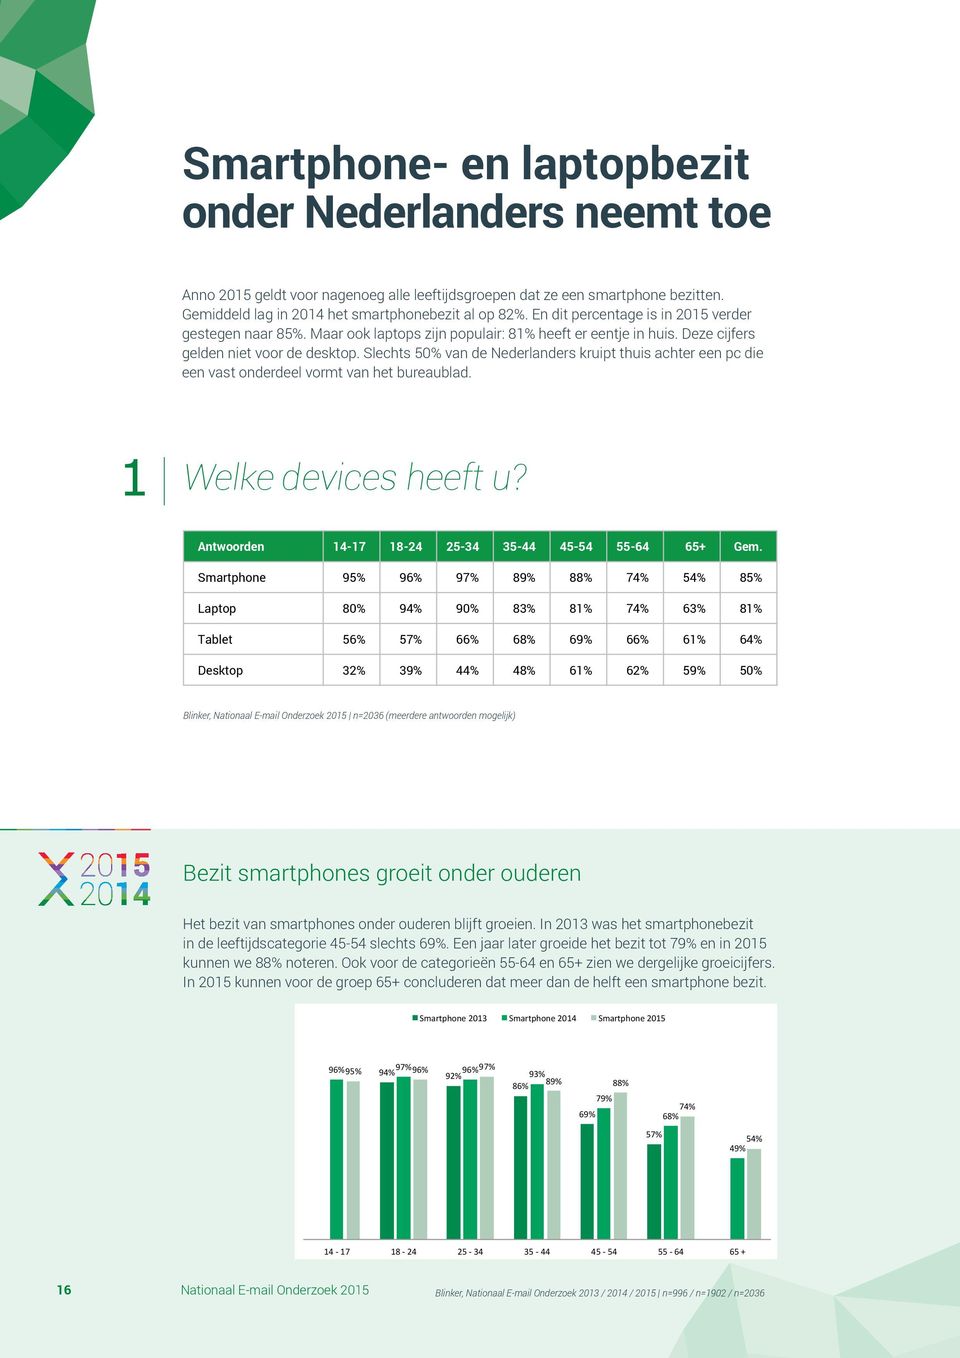 Slechts 50% van de Nederlanders kruipt thuis achter een pc die een vast onderdeel vormt van het bureaublad. 1 Welke devices heeft u?